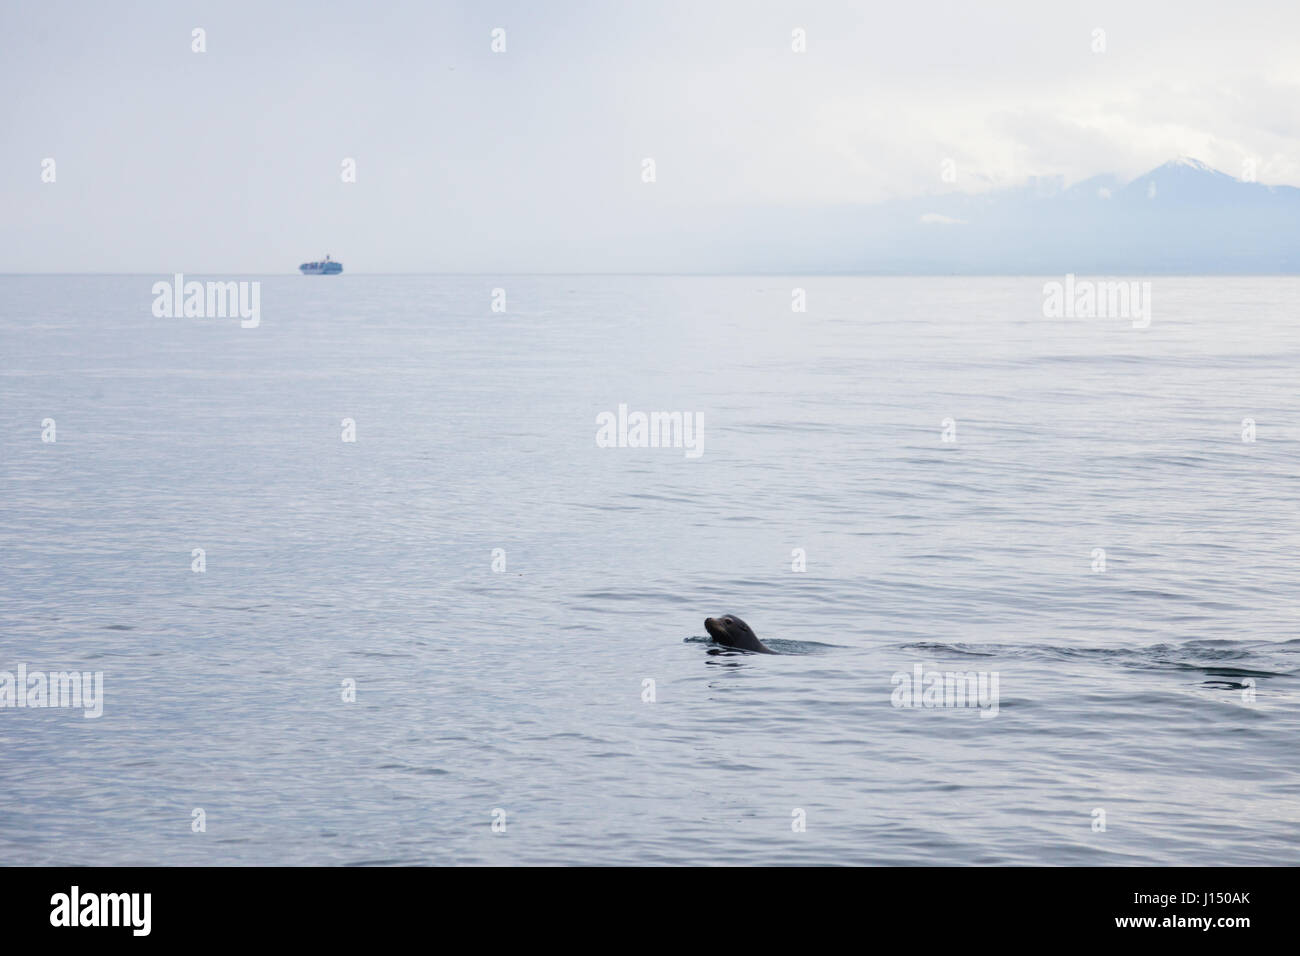 Seal swimming off Victoria BC coastline Stock Photo